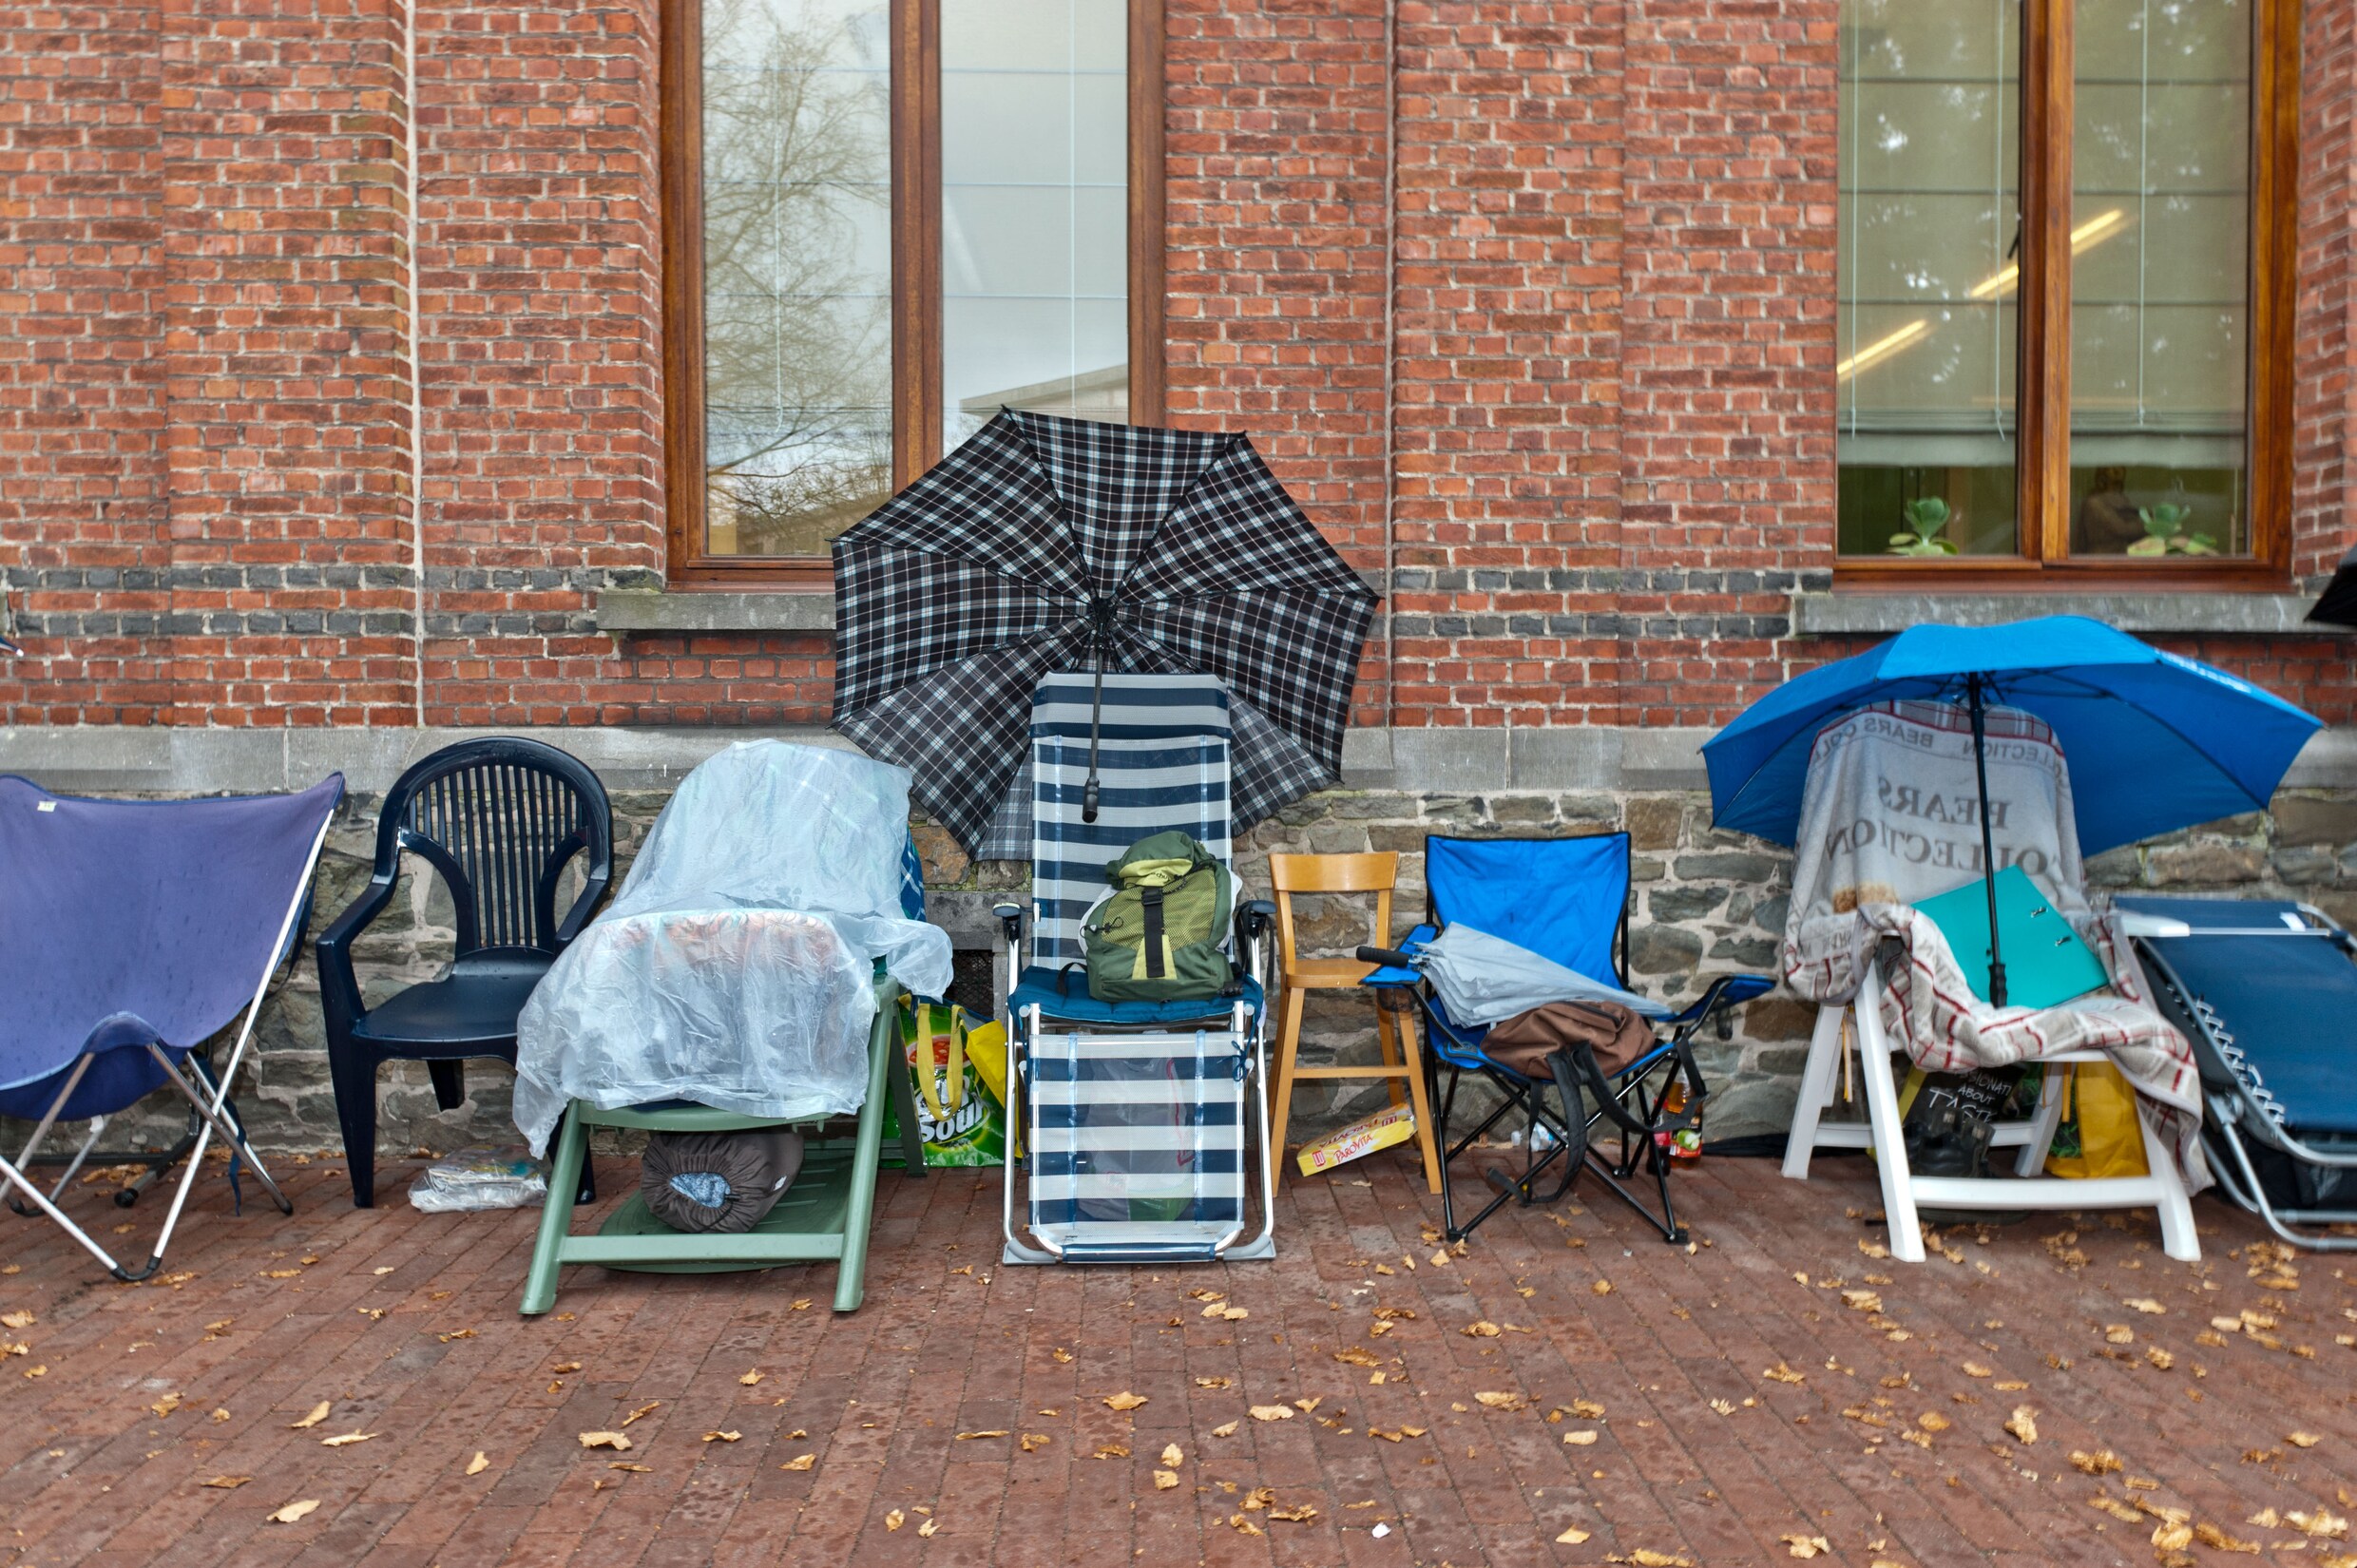 Gedaan met kamperen aan de schoolpoort vanaf 2020: Vlaams Parlement forceert onverwacht doorbraak